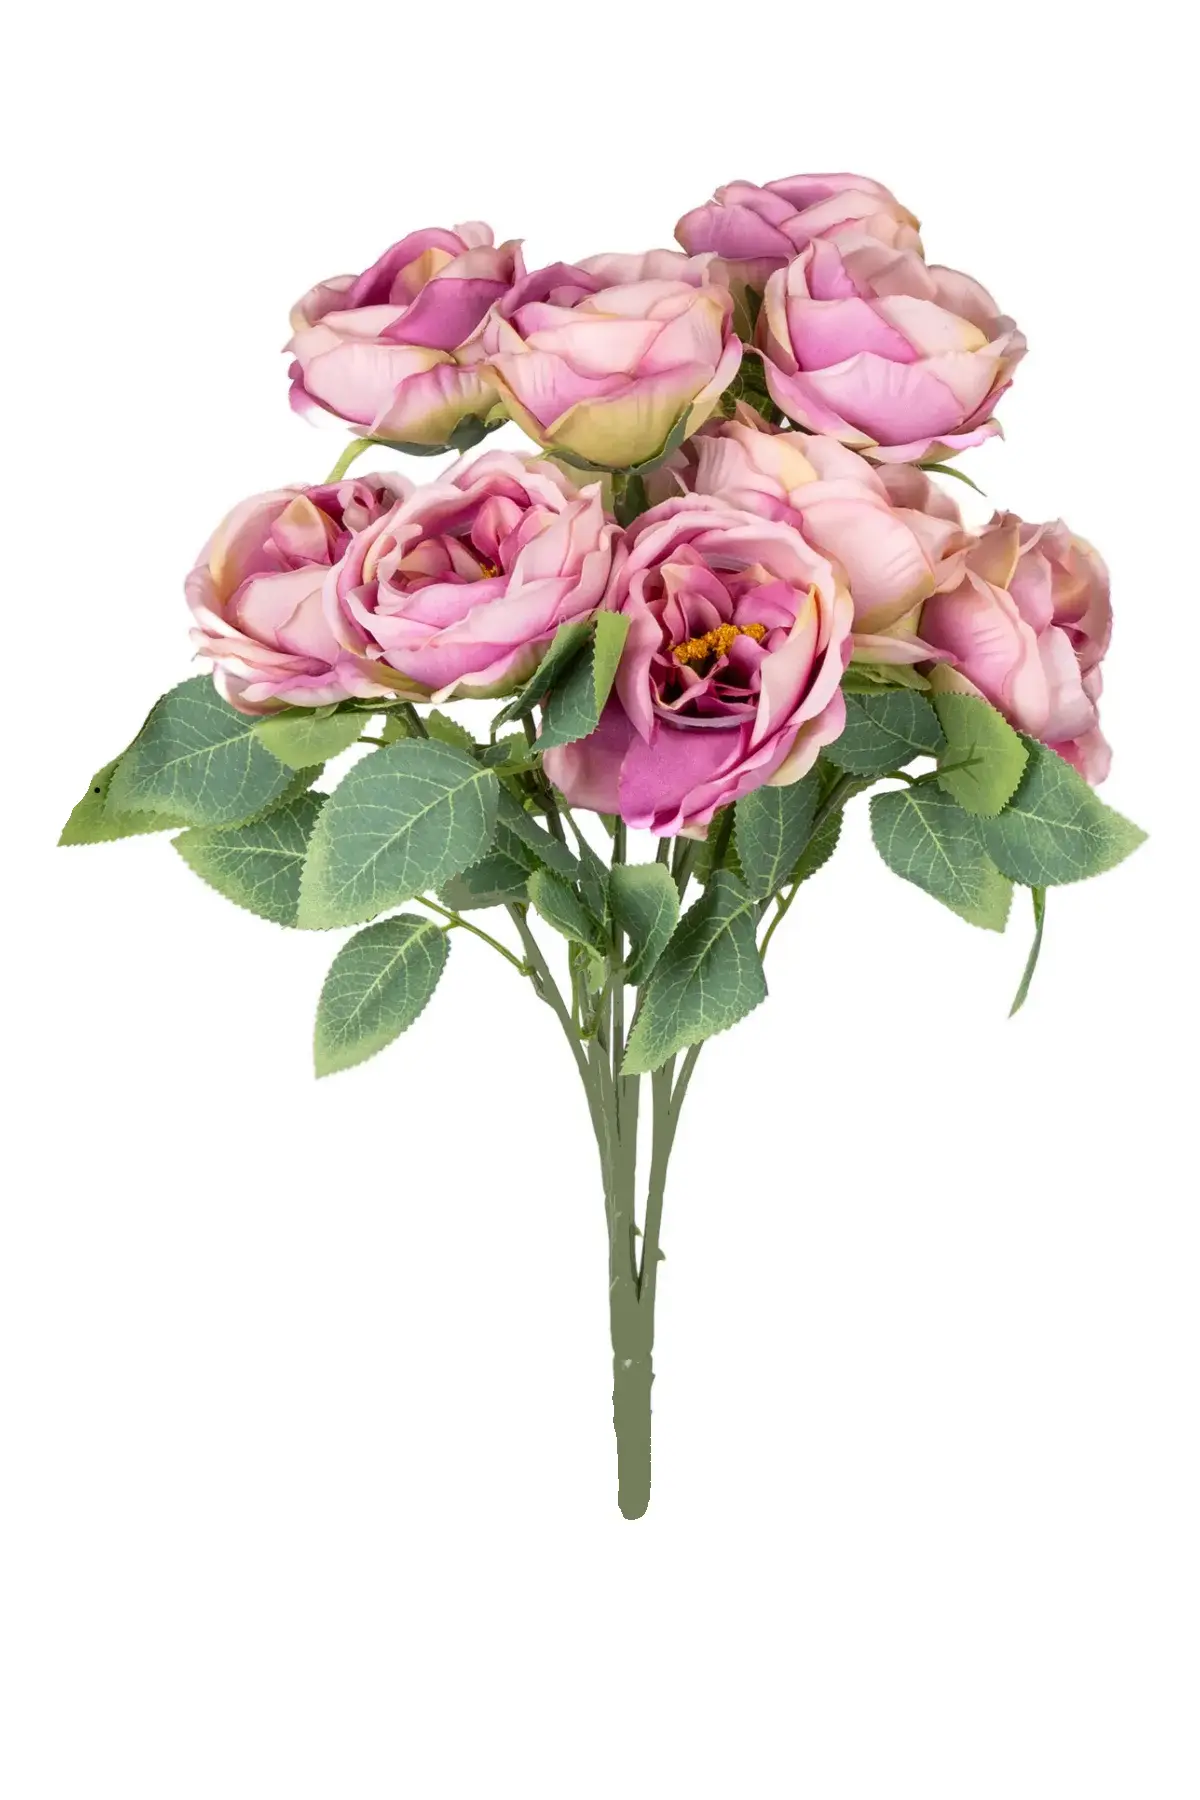 Yapay Çiçek Deposu - Yapay Çiçek 10 Dallı Catalina Rose 45 cm Krem-Lila